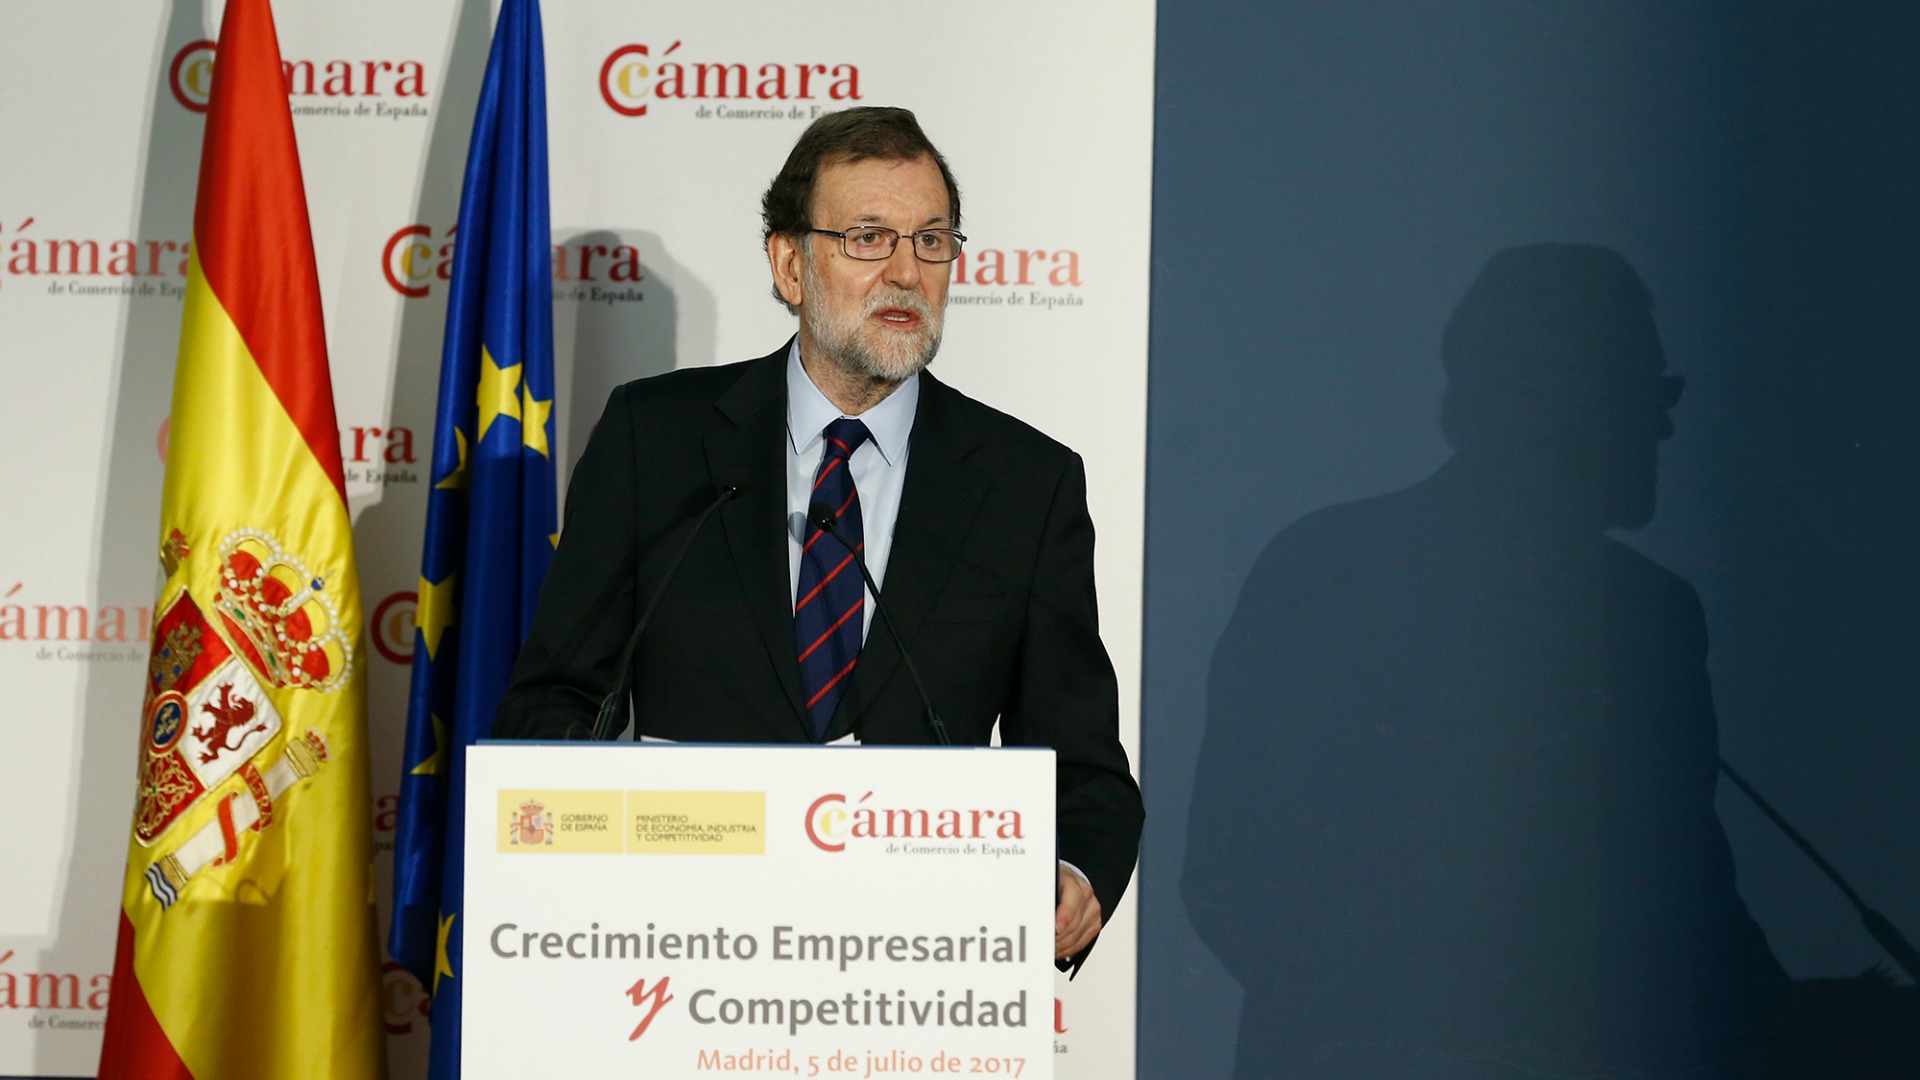 Rajoy pide serenidad frente a "delirios autoritarios" en Cataluña